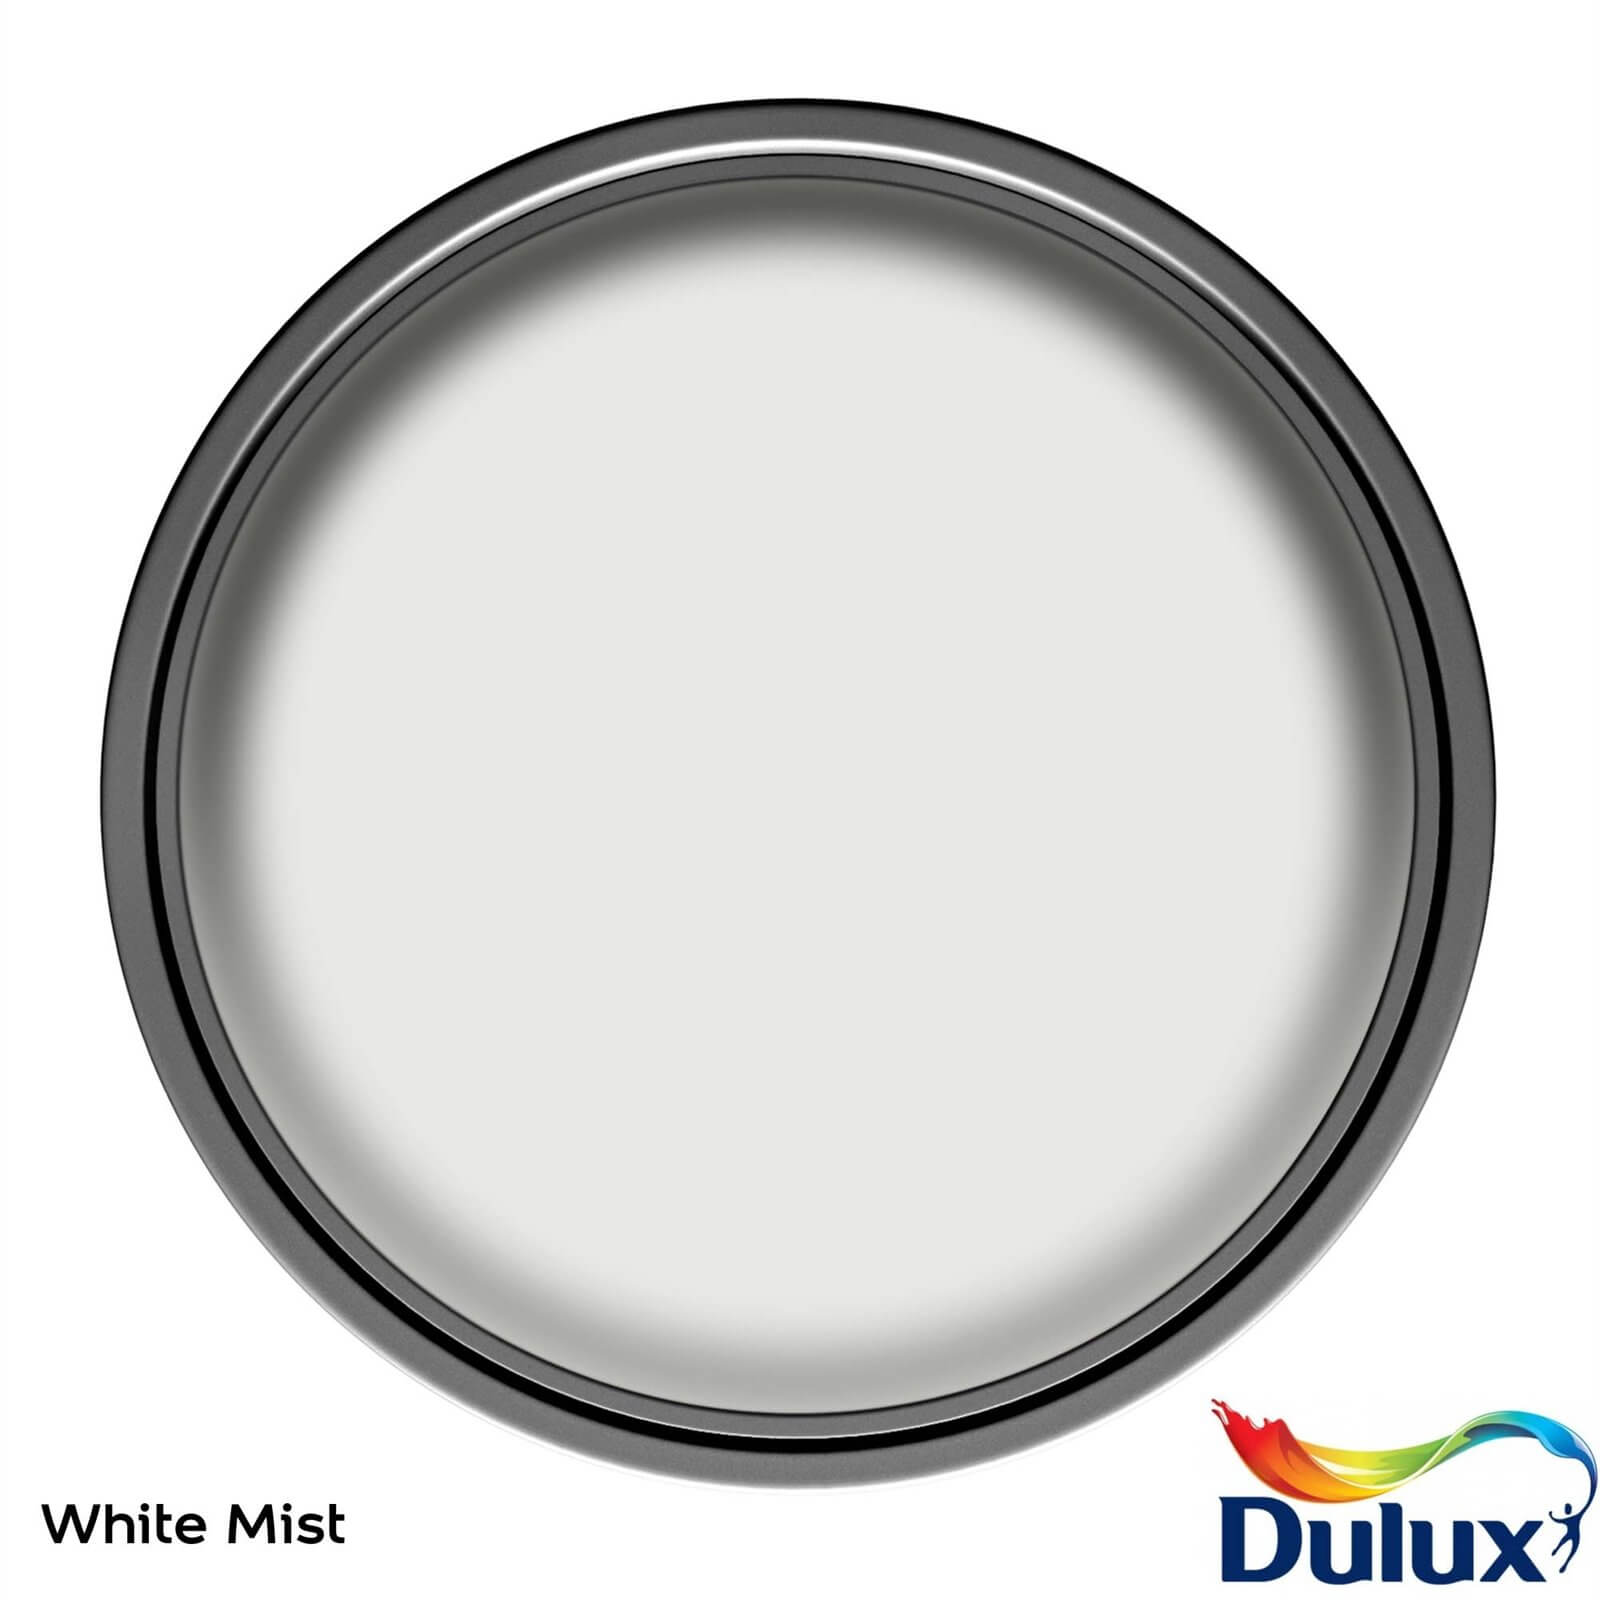 Dulux Easycare Washable & Tough Matt Paint White Mist - 2.5L